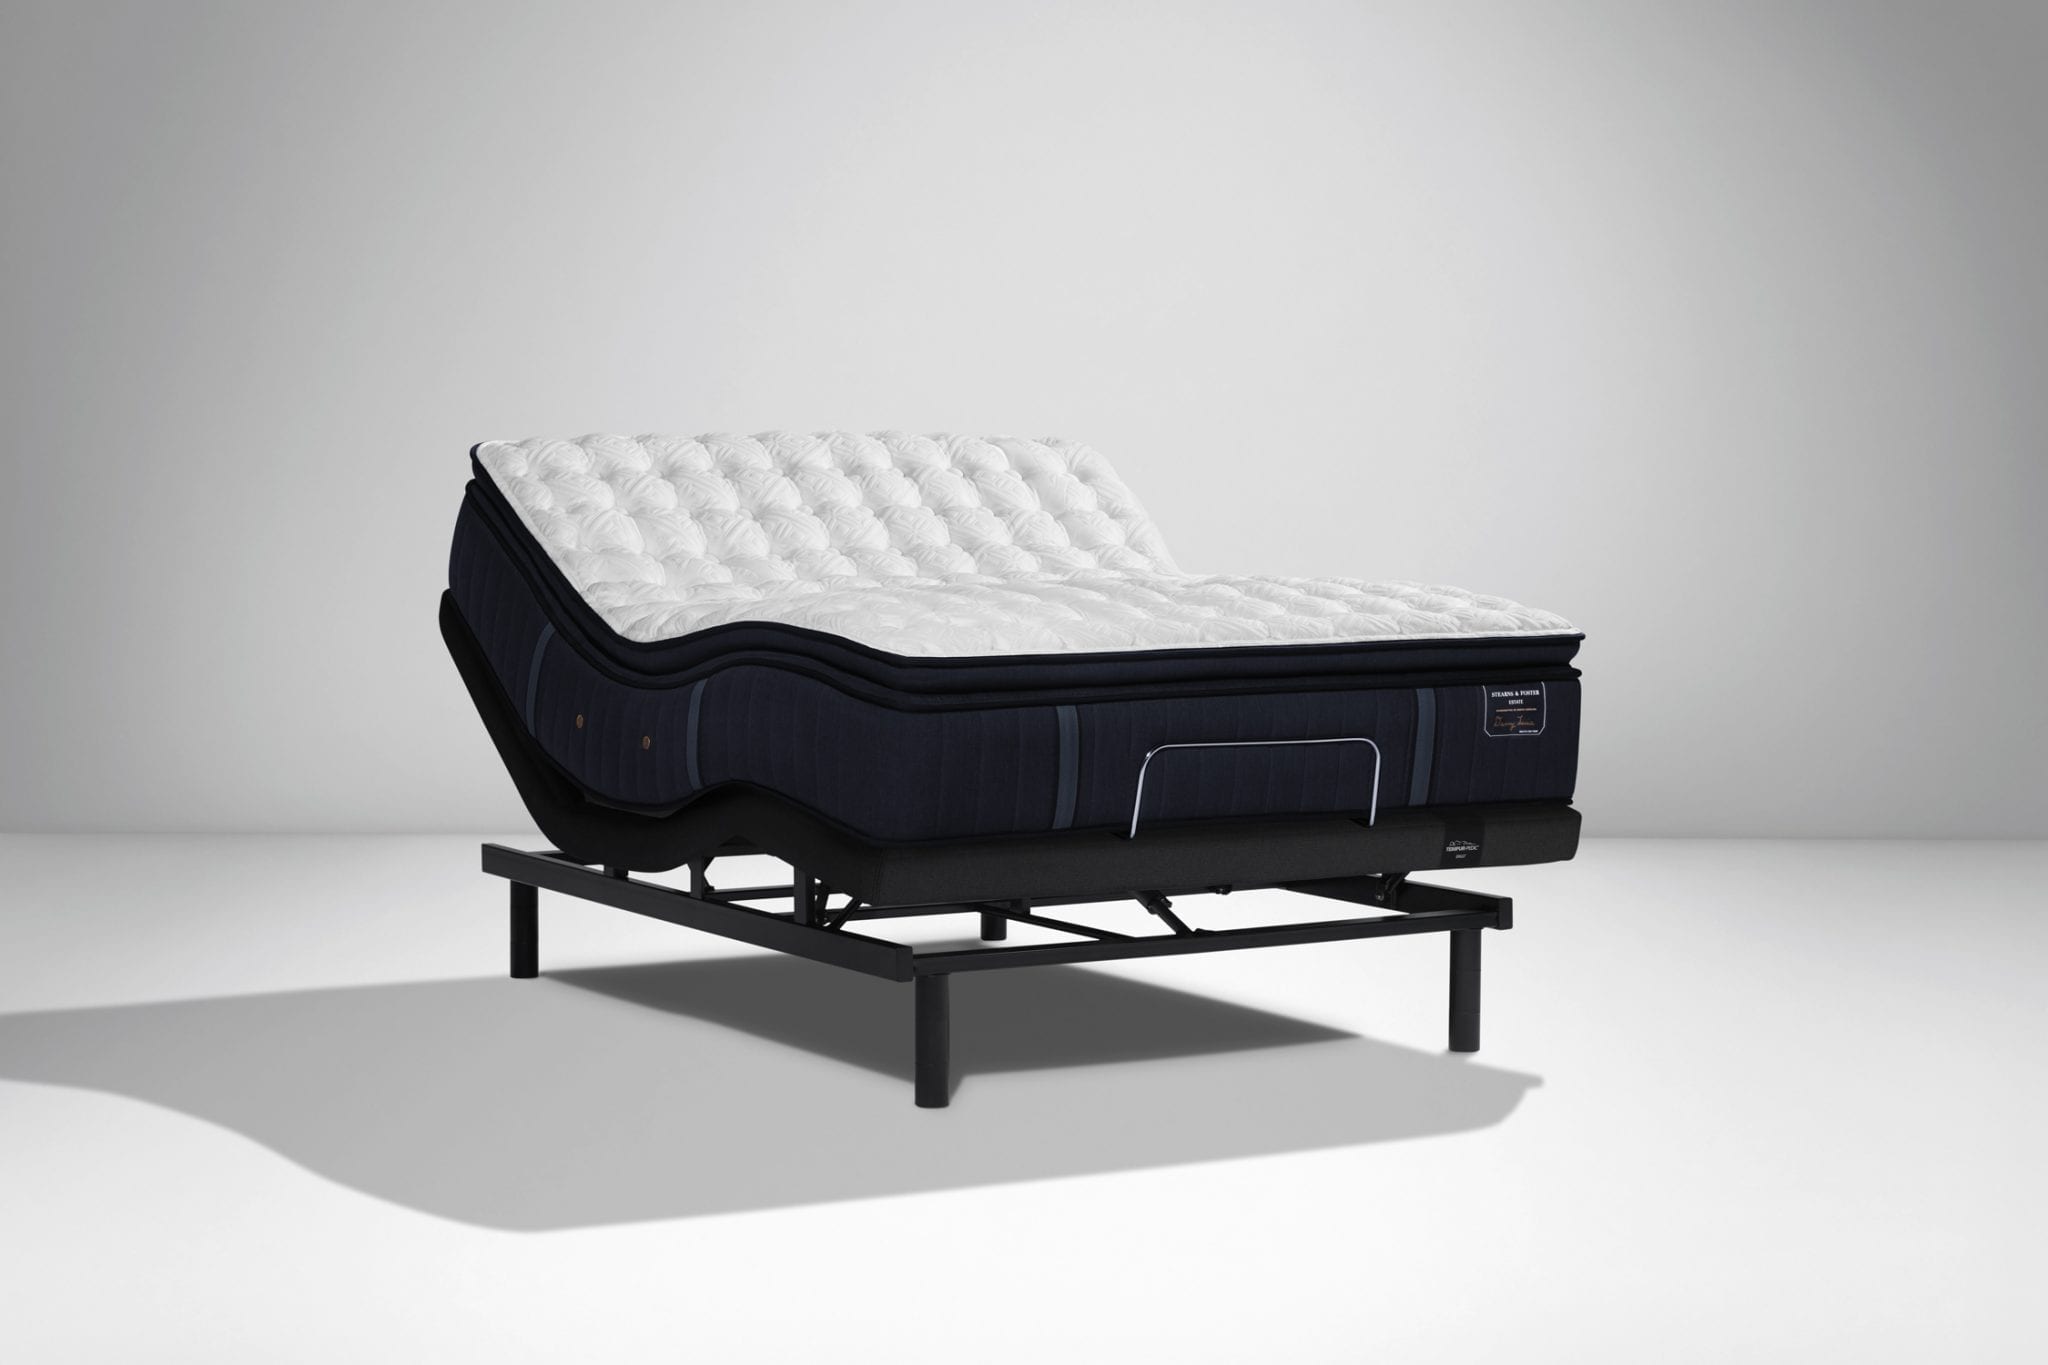 stearns & foster pollock luxury plush mattress